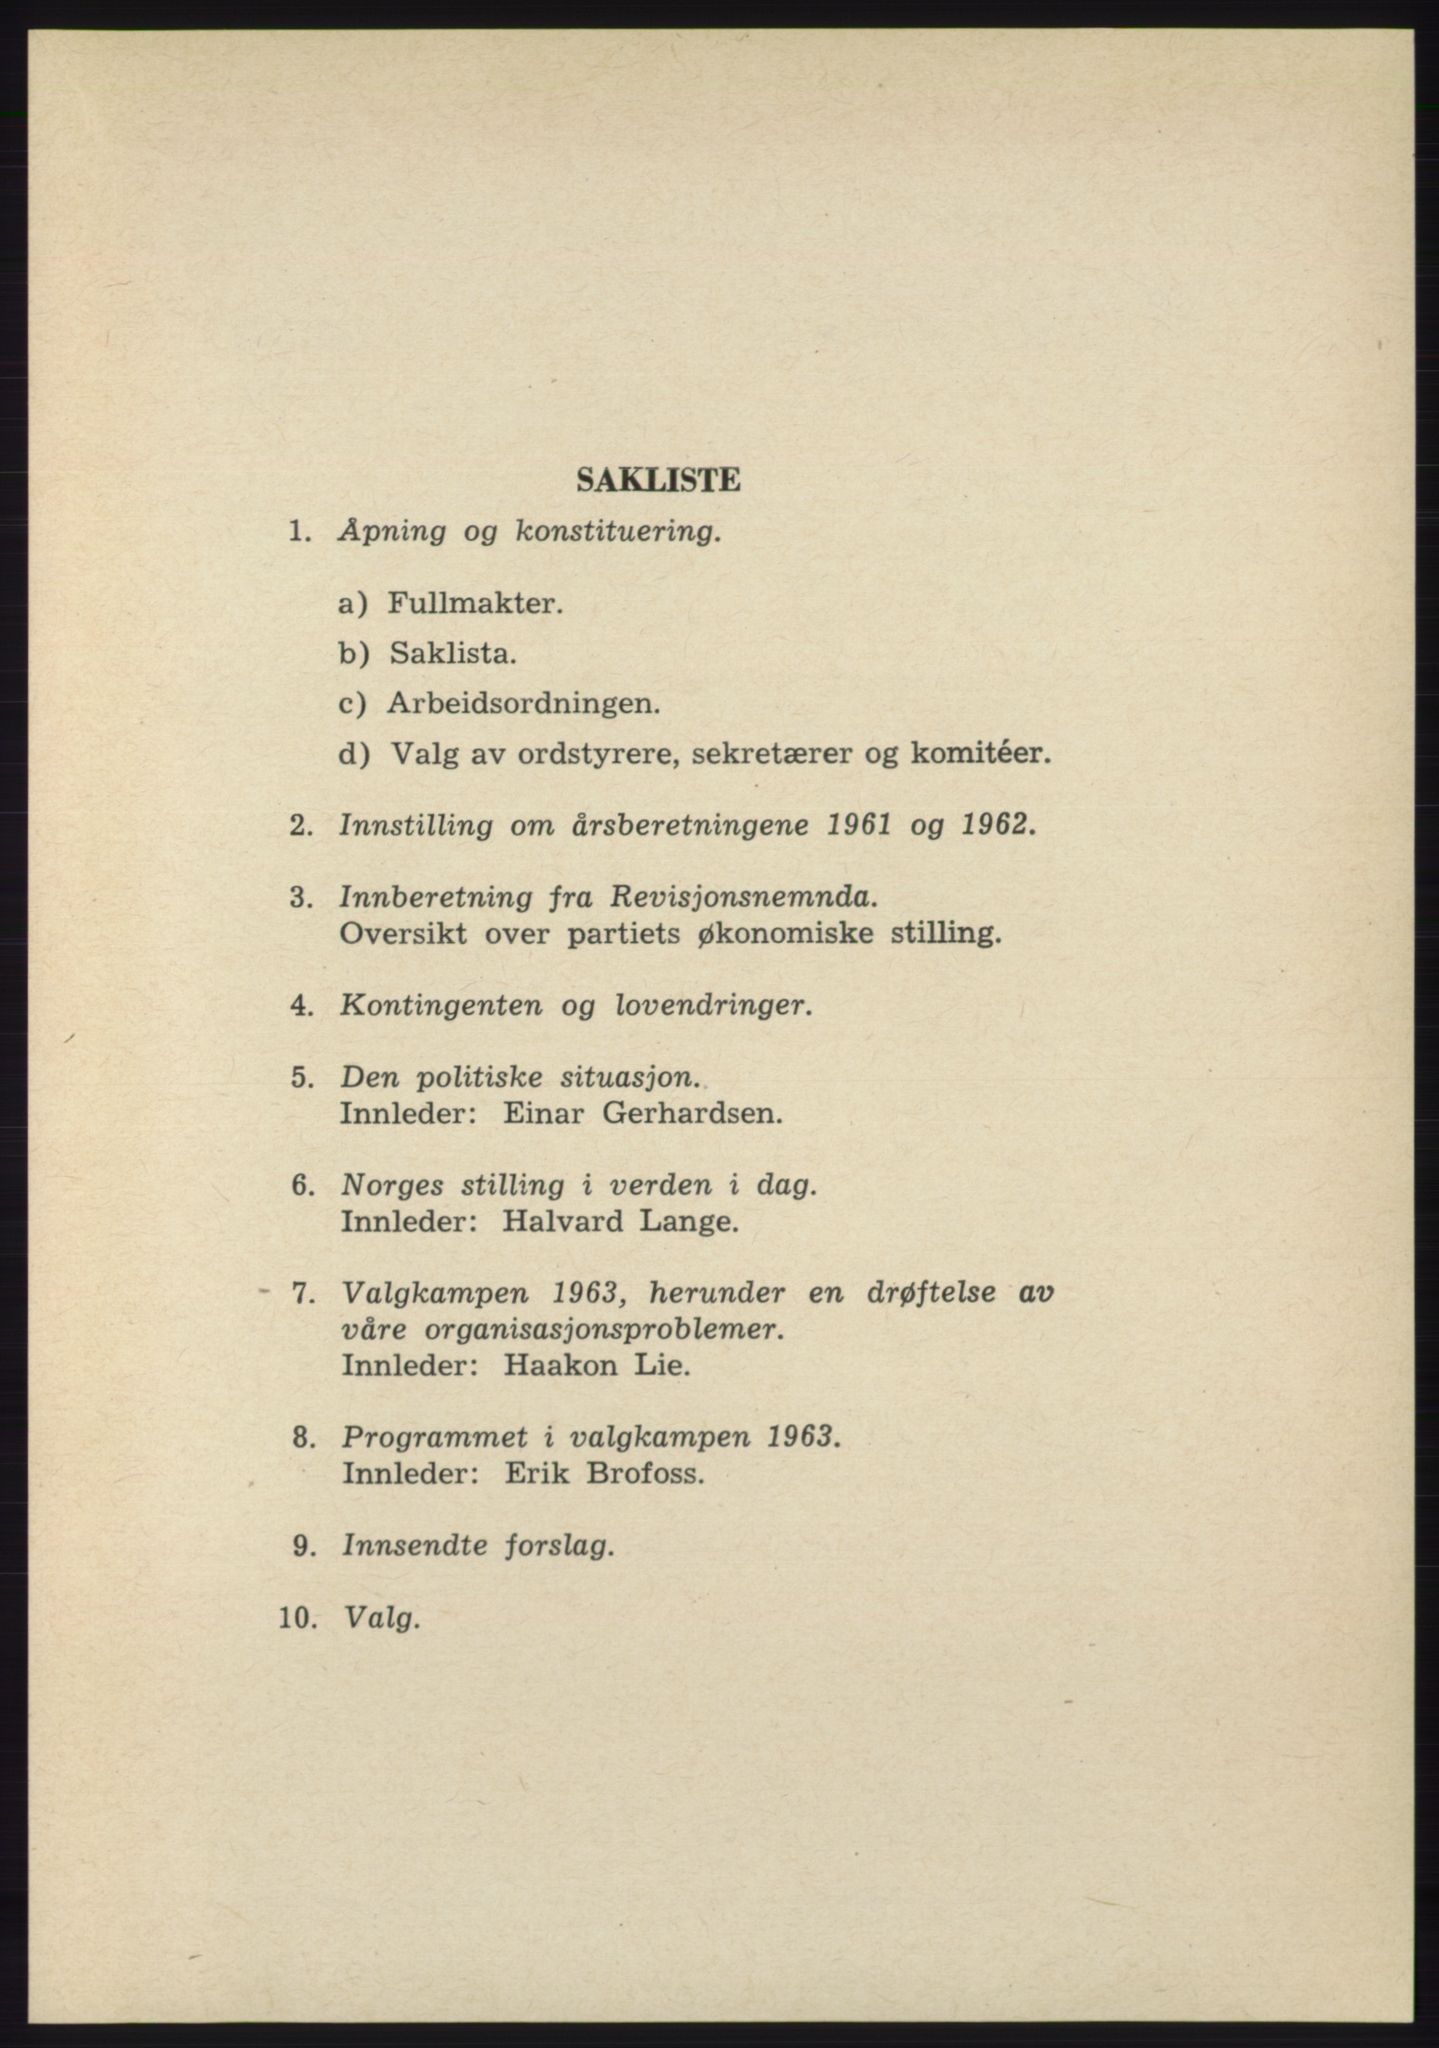 Det norske Arbeiderparti - publikasjoner, AAB/-/-/-: Protokoll over forhandlingene på det 39. ordinære landsmøte 23.-25. mai 1963 i Oslo, 1963